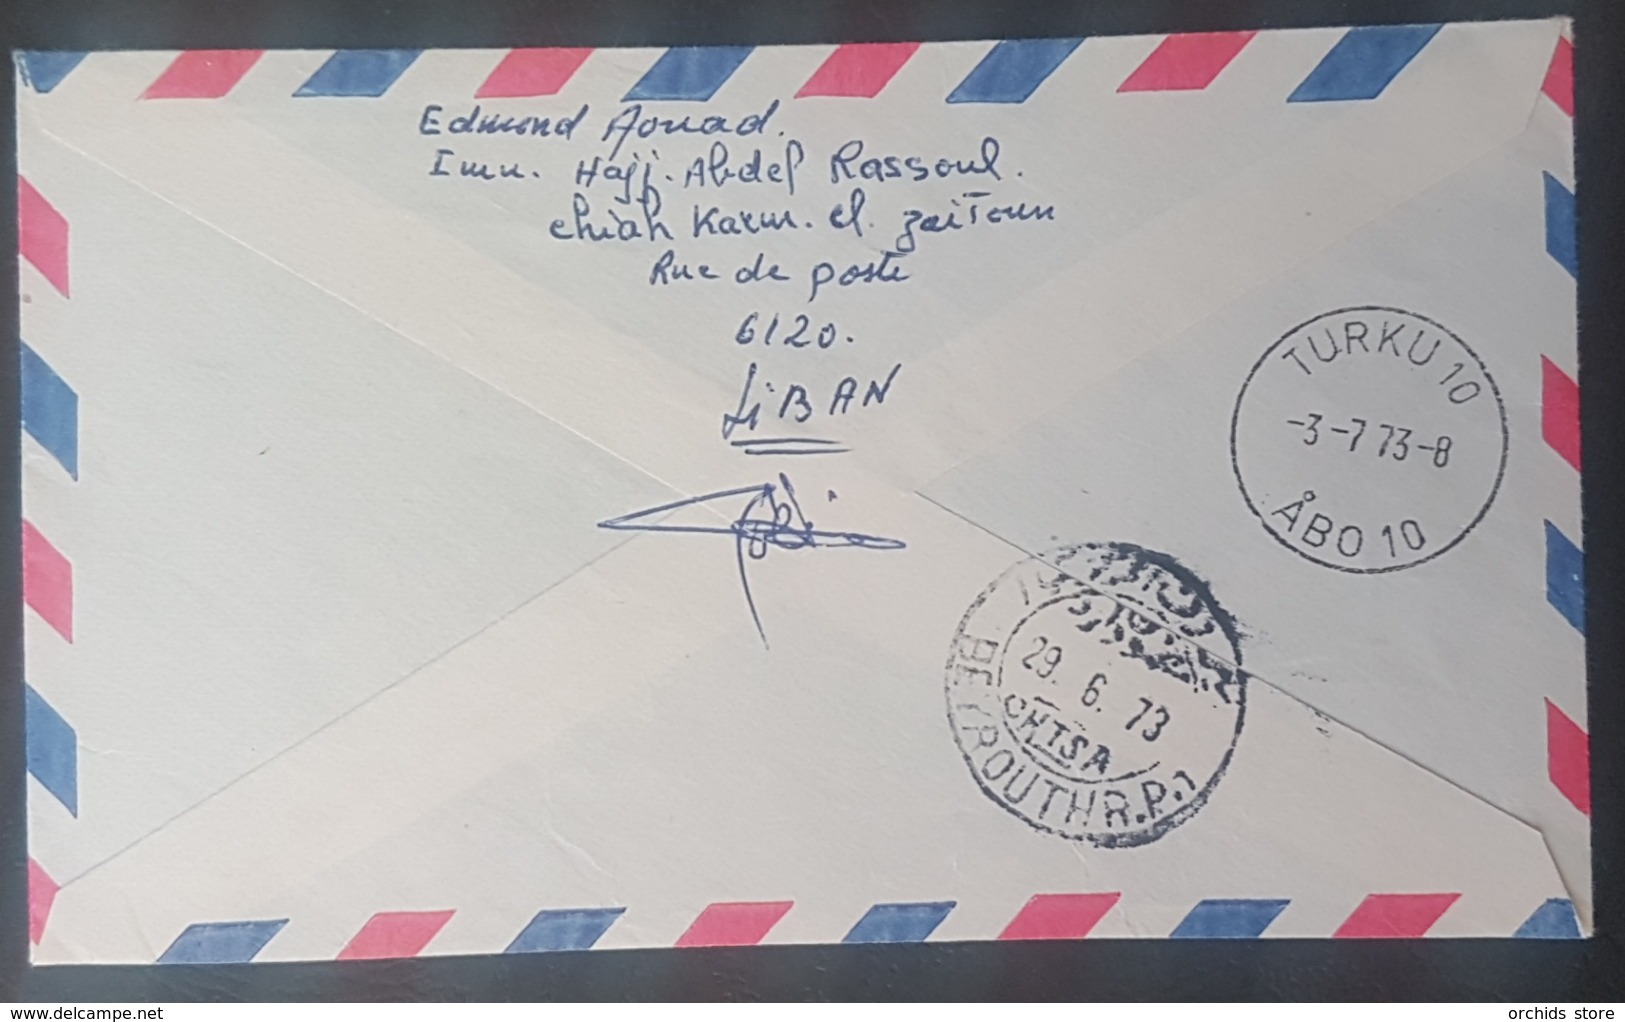 BL271 - Lebanon 1973 CHIAH Registered Airmail Cover - Lebanon